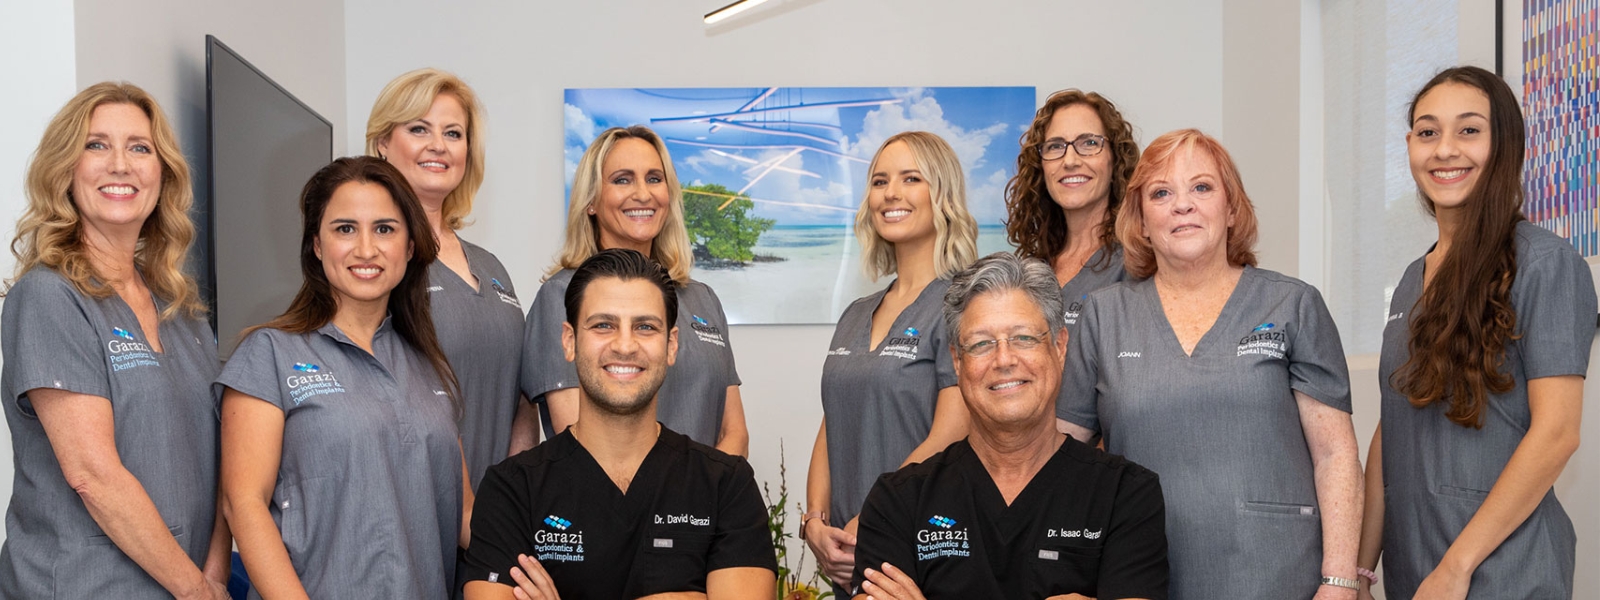 Garazi Periodontics & Dental Implants Staff